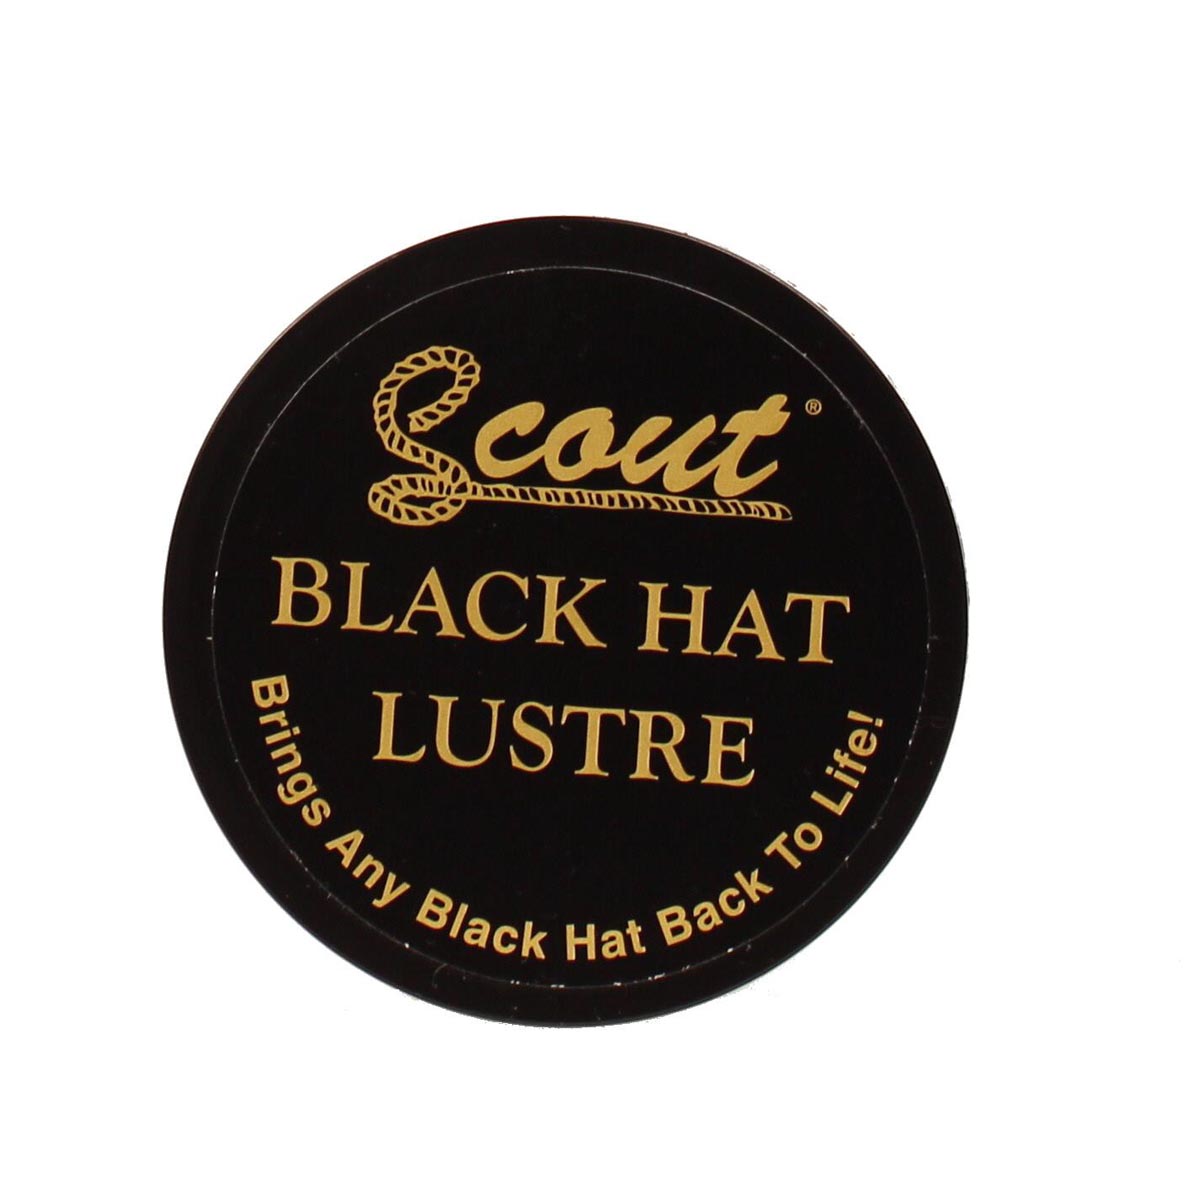 Black Hat Luster